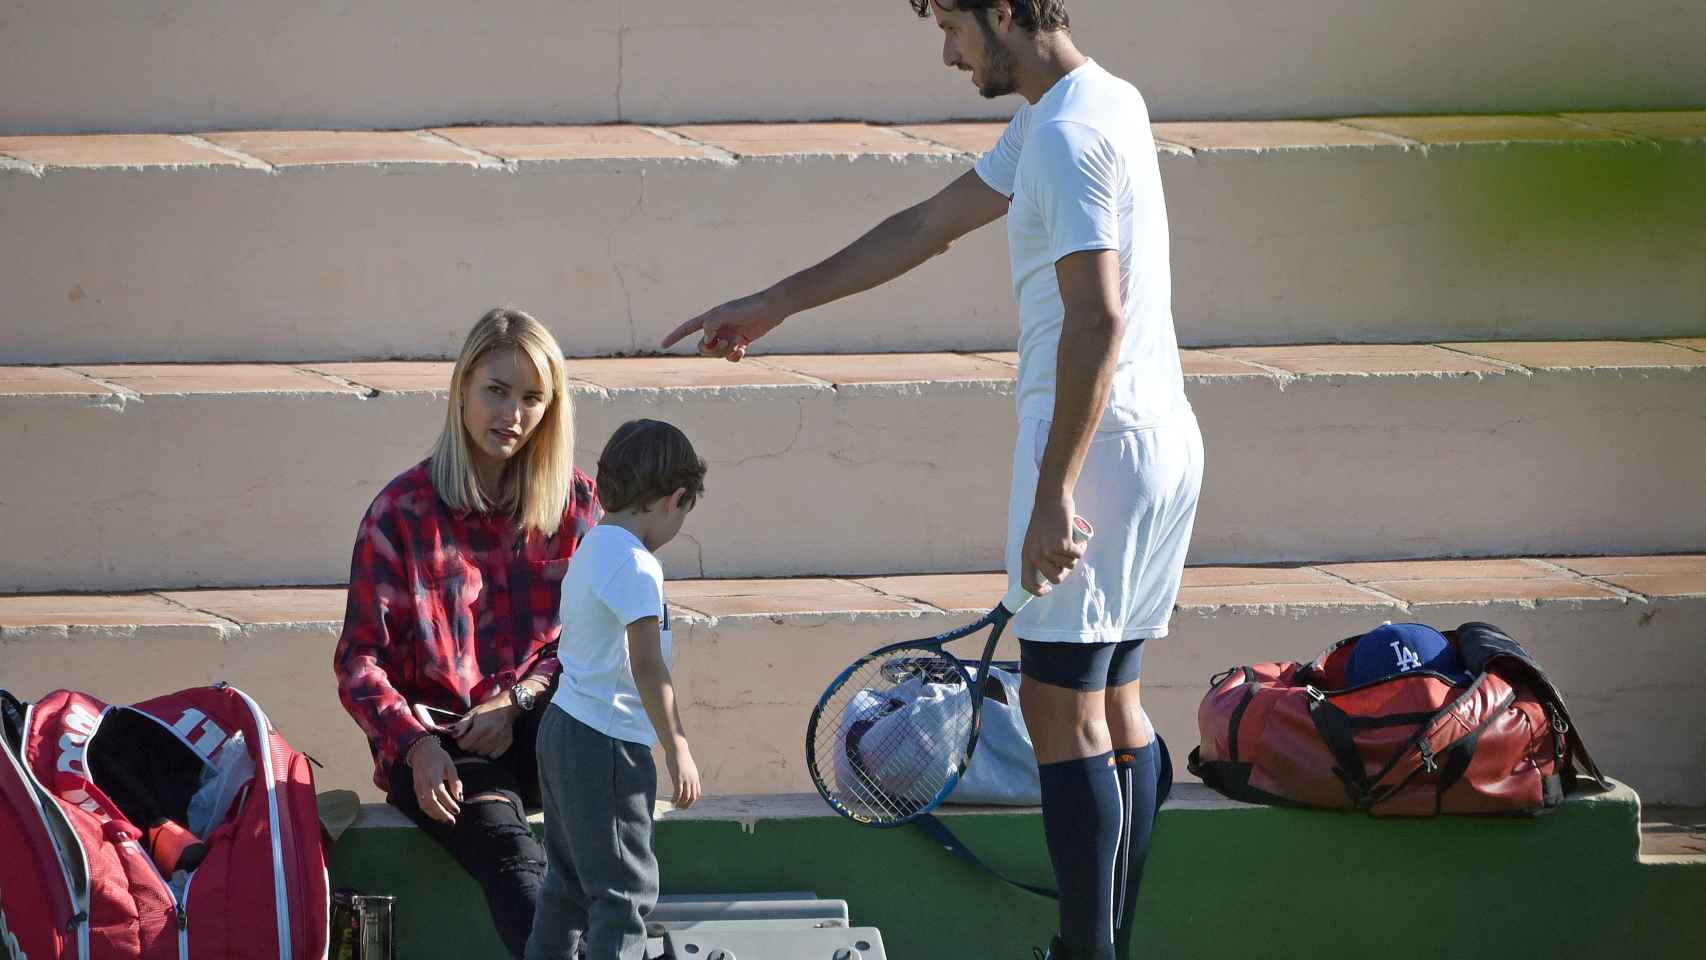 Feliciano juega al tenis con el pequeño Lucas, bajo la atenta mirada de Alba.